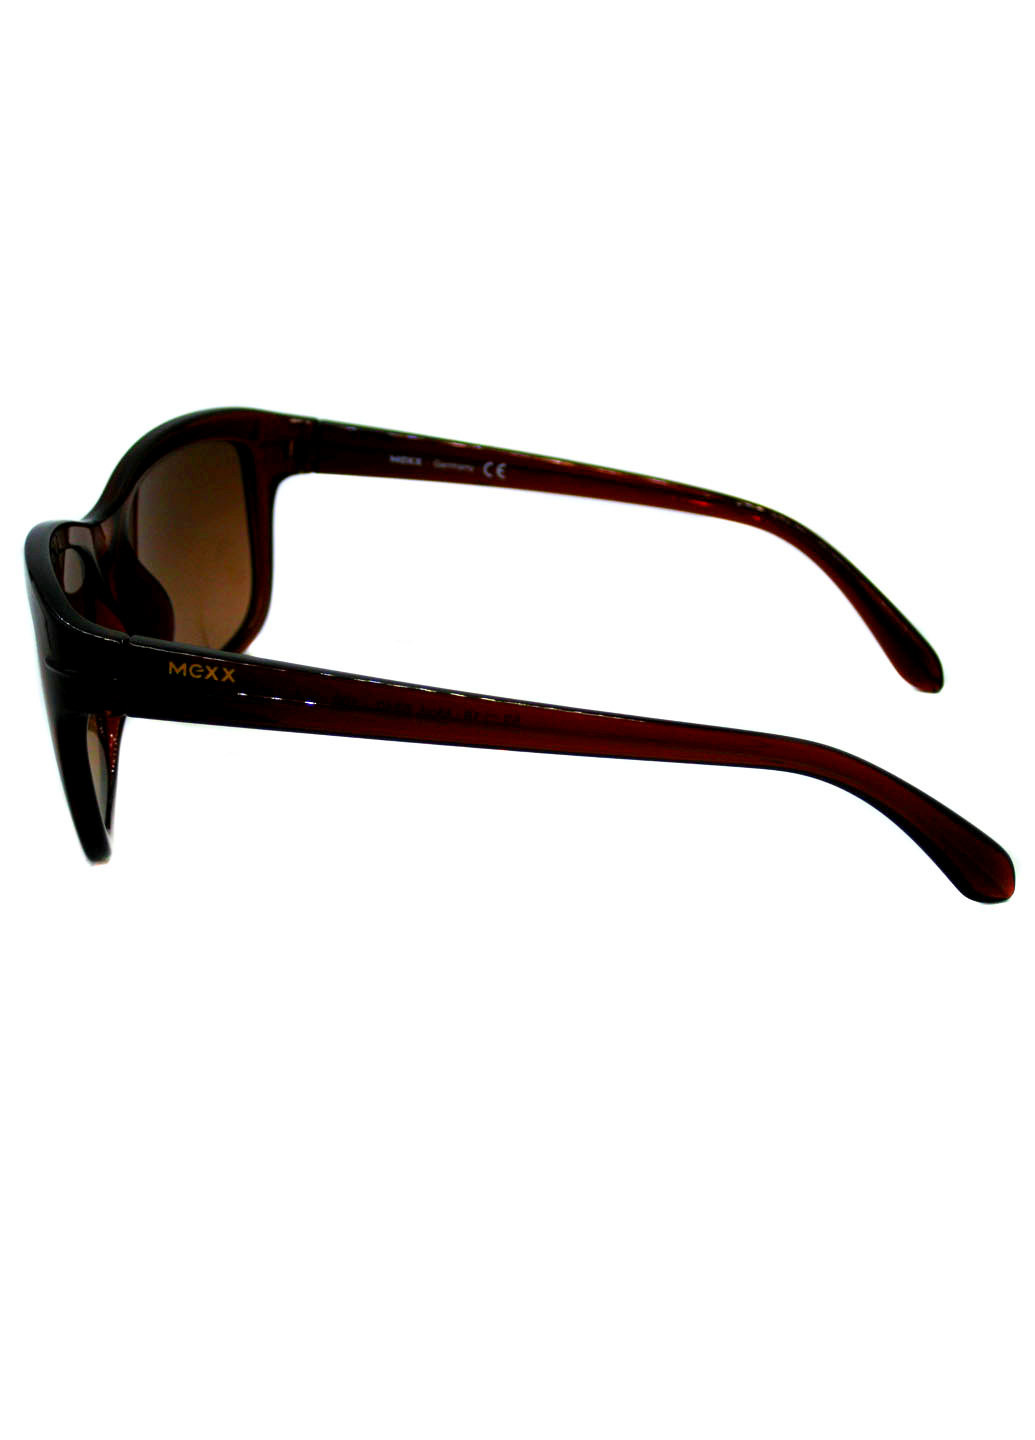 Сонцезахиснi окуляри Mexx m 6340 100 (259270219)